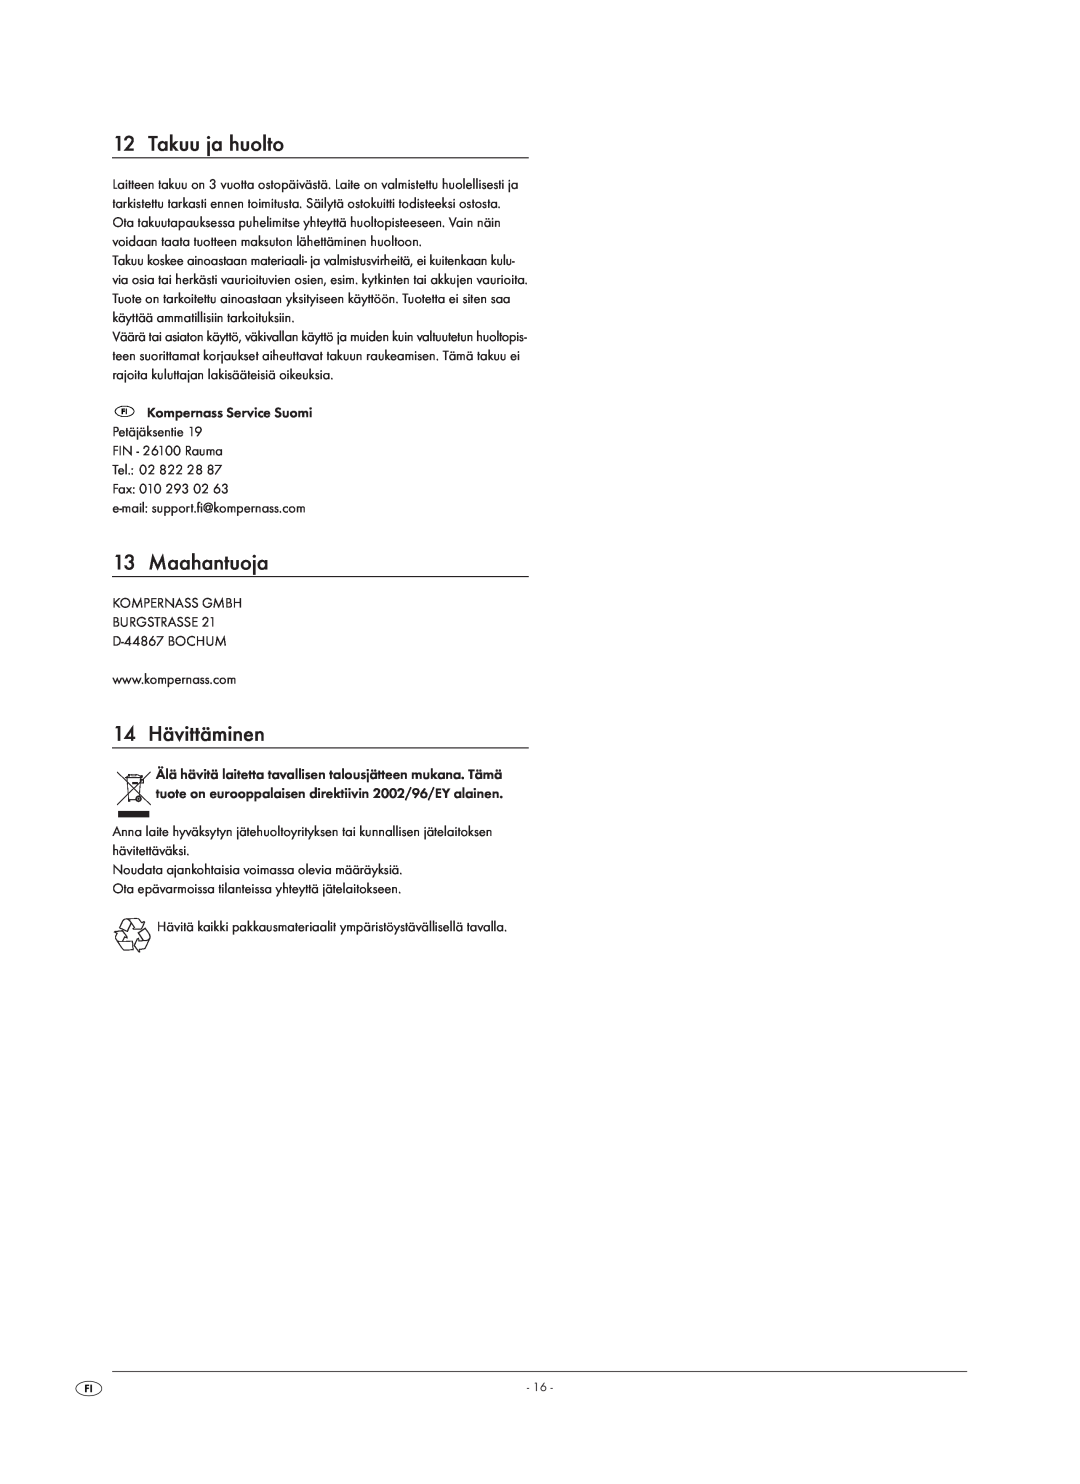 Kompernass KH 1150 manual Takuu ja huolto, Maahantuoja, 14 Hävittäminen, Kompernass Service Suomi Petäjäksentie 